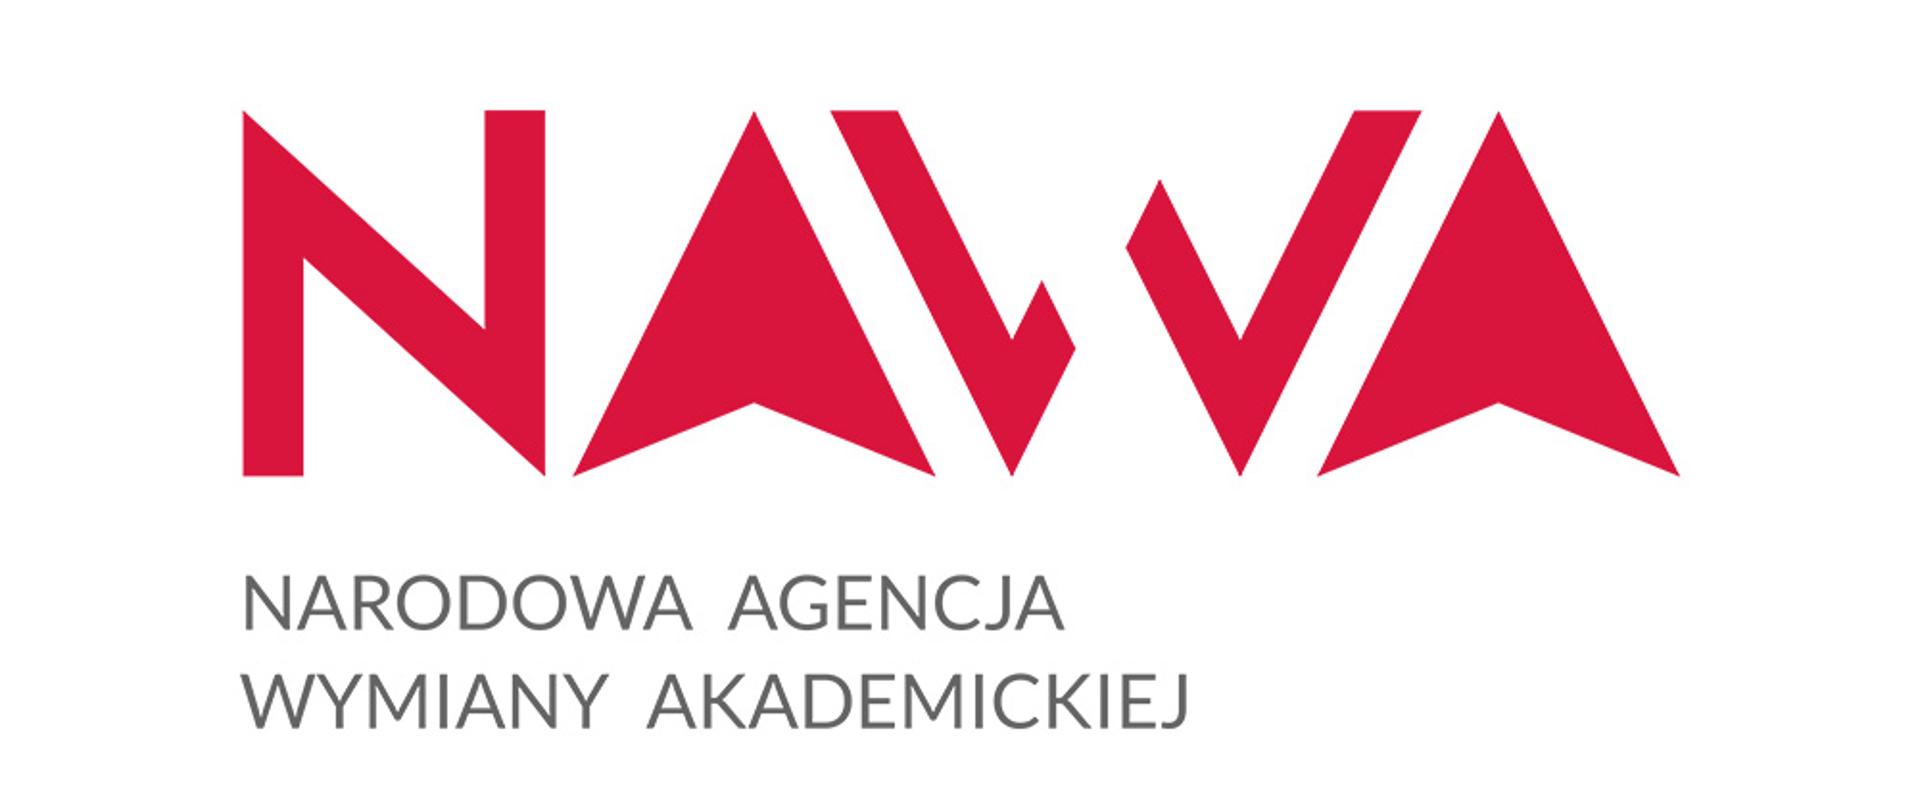 Logo NAWA - czerwone stylizowane litery na białym tle.